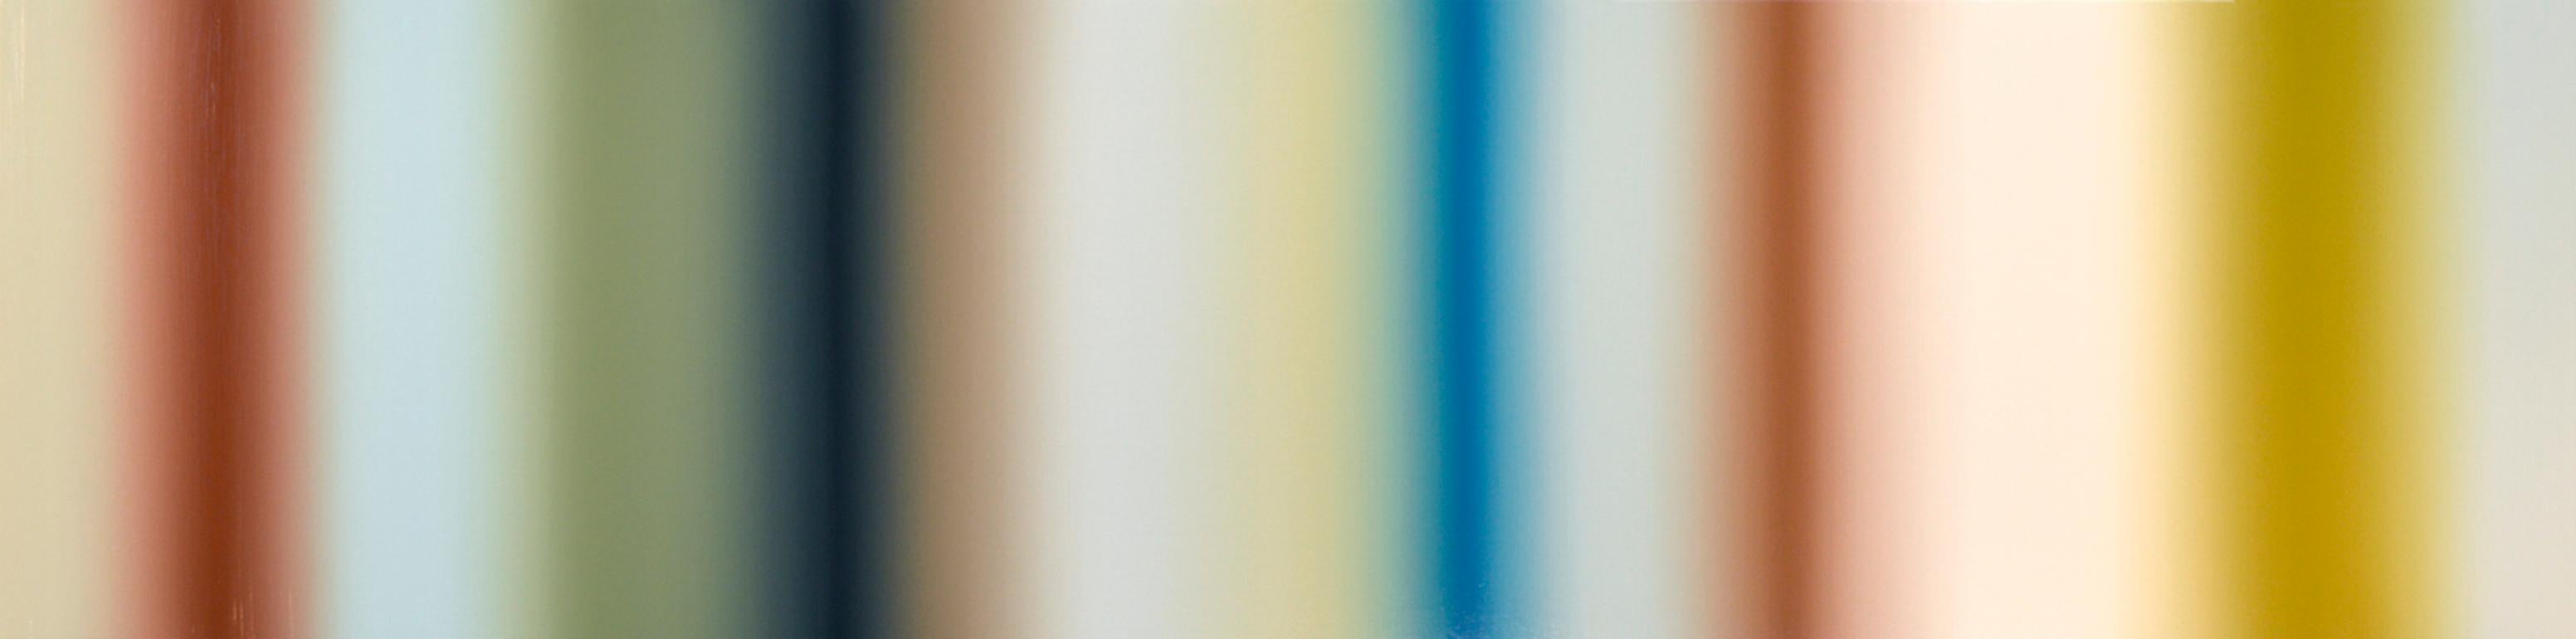 Patrick Dintino Abstract Painting – Großes abstraktes Ölgemälde in Erdtönen mit weißen, gelben und blauen Streifen